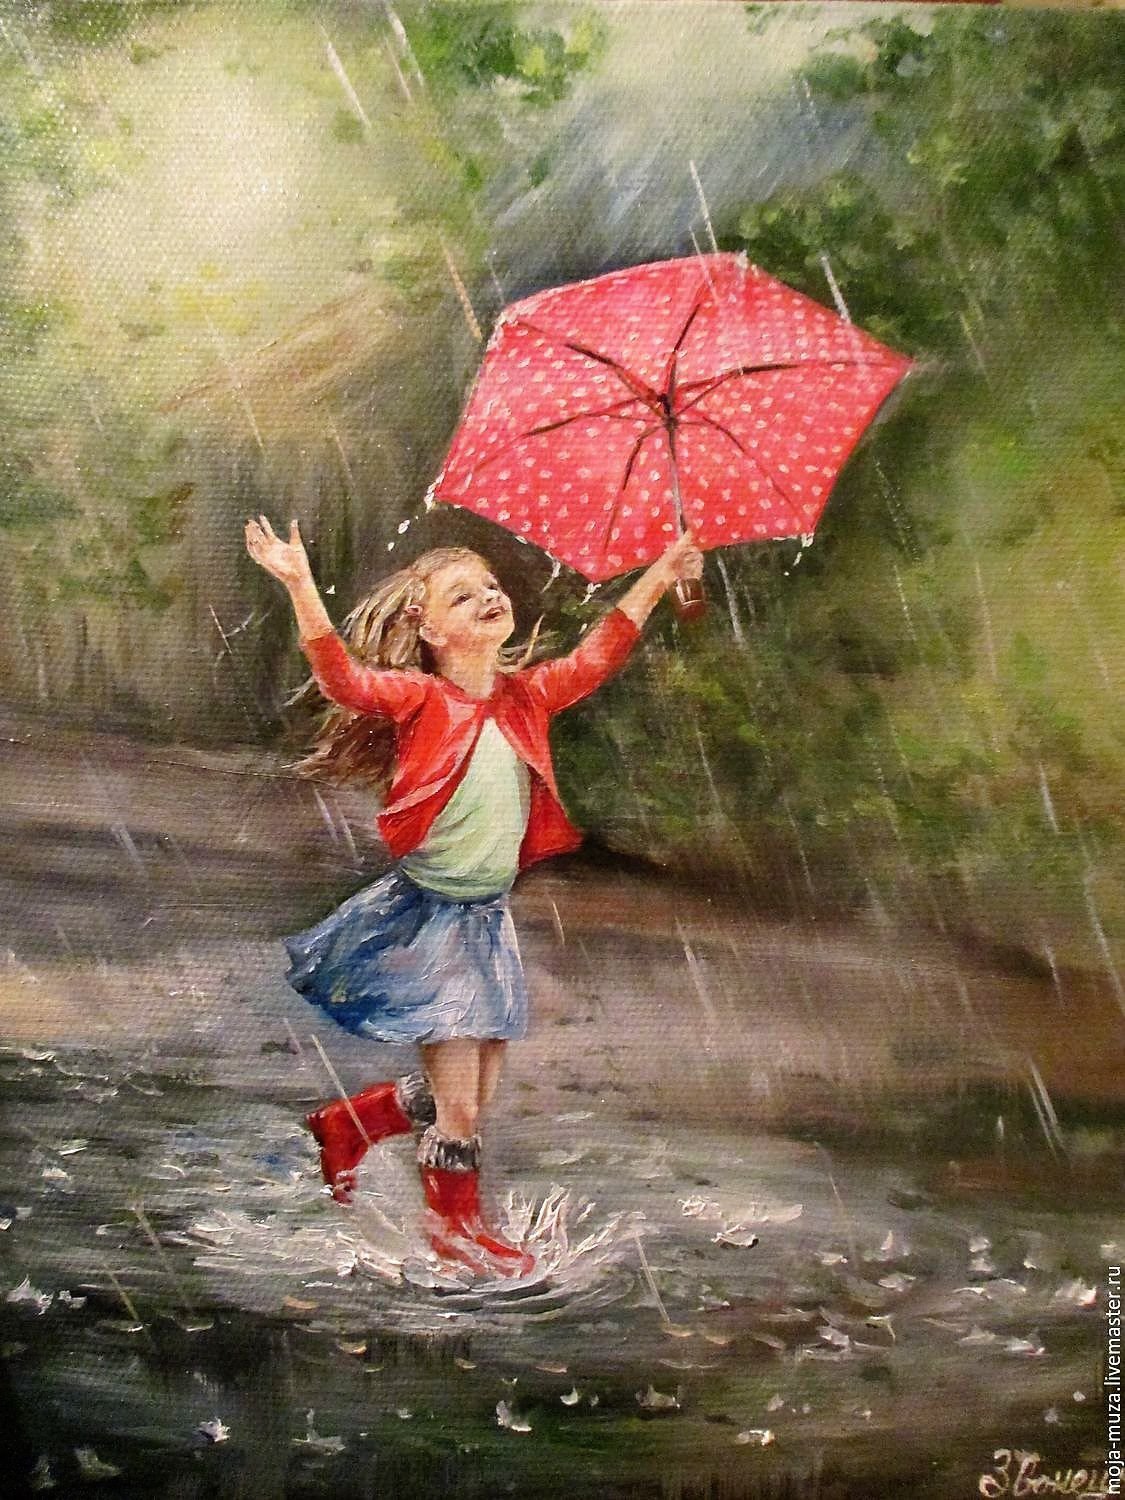 Хорошего настроения в дождливую погоду. Девочка под дождем. Радость под дождем. Летний дождик. Счастья в дождливый день.